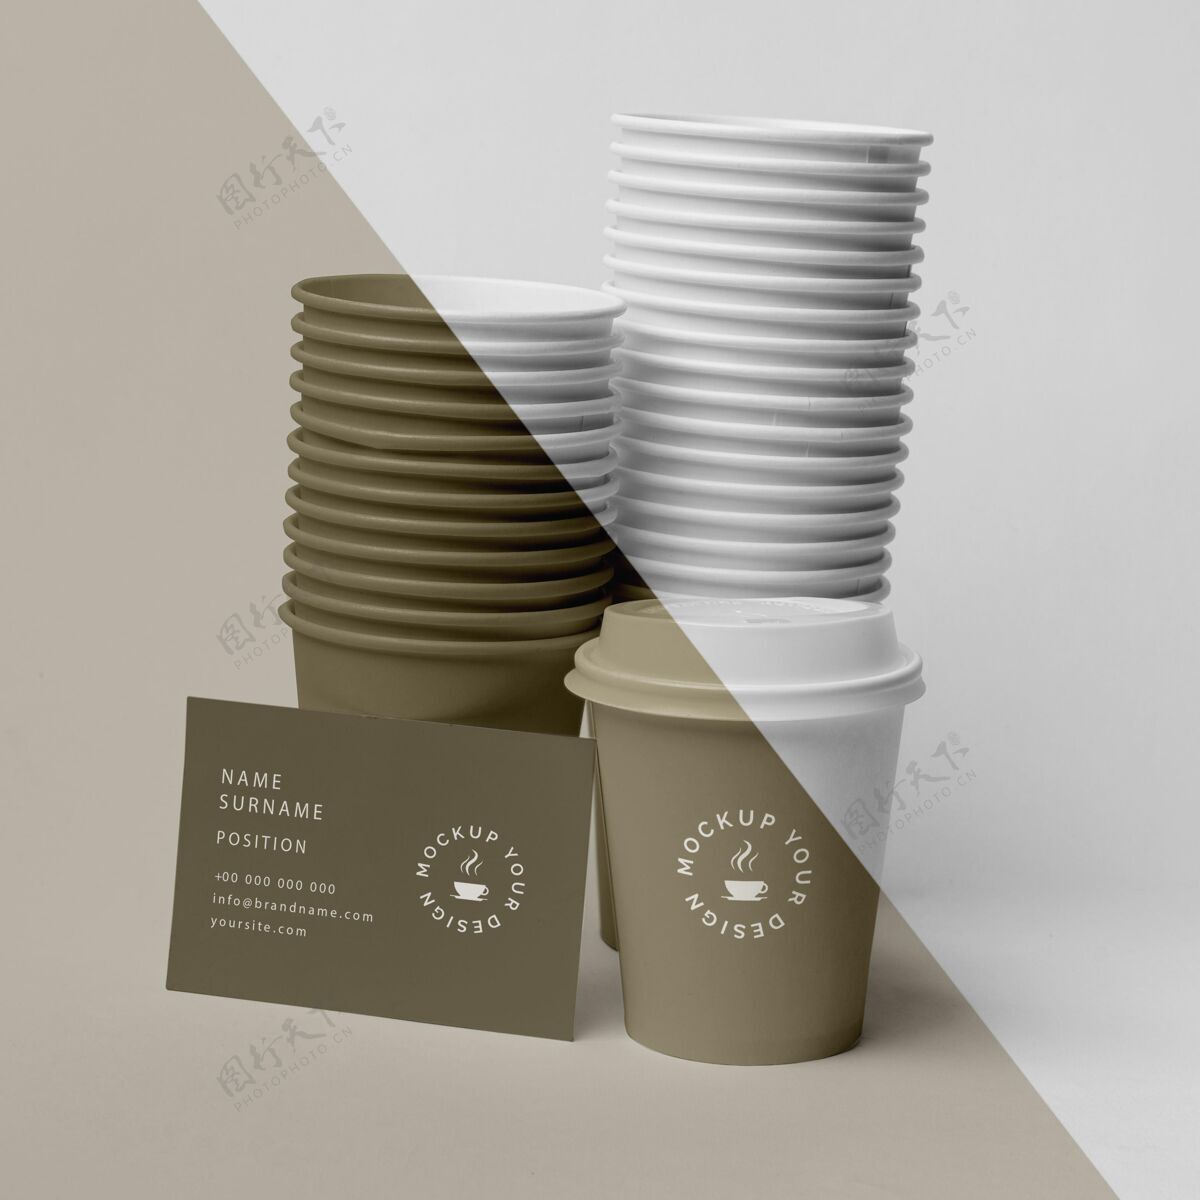 咖啡模型桌上有咖啡模型的塑料杯塑料杯模型品牌